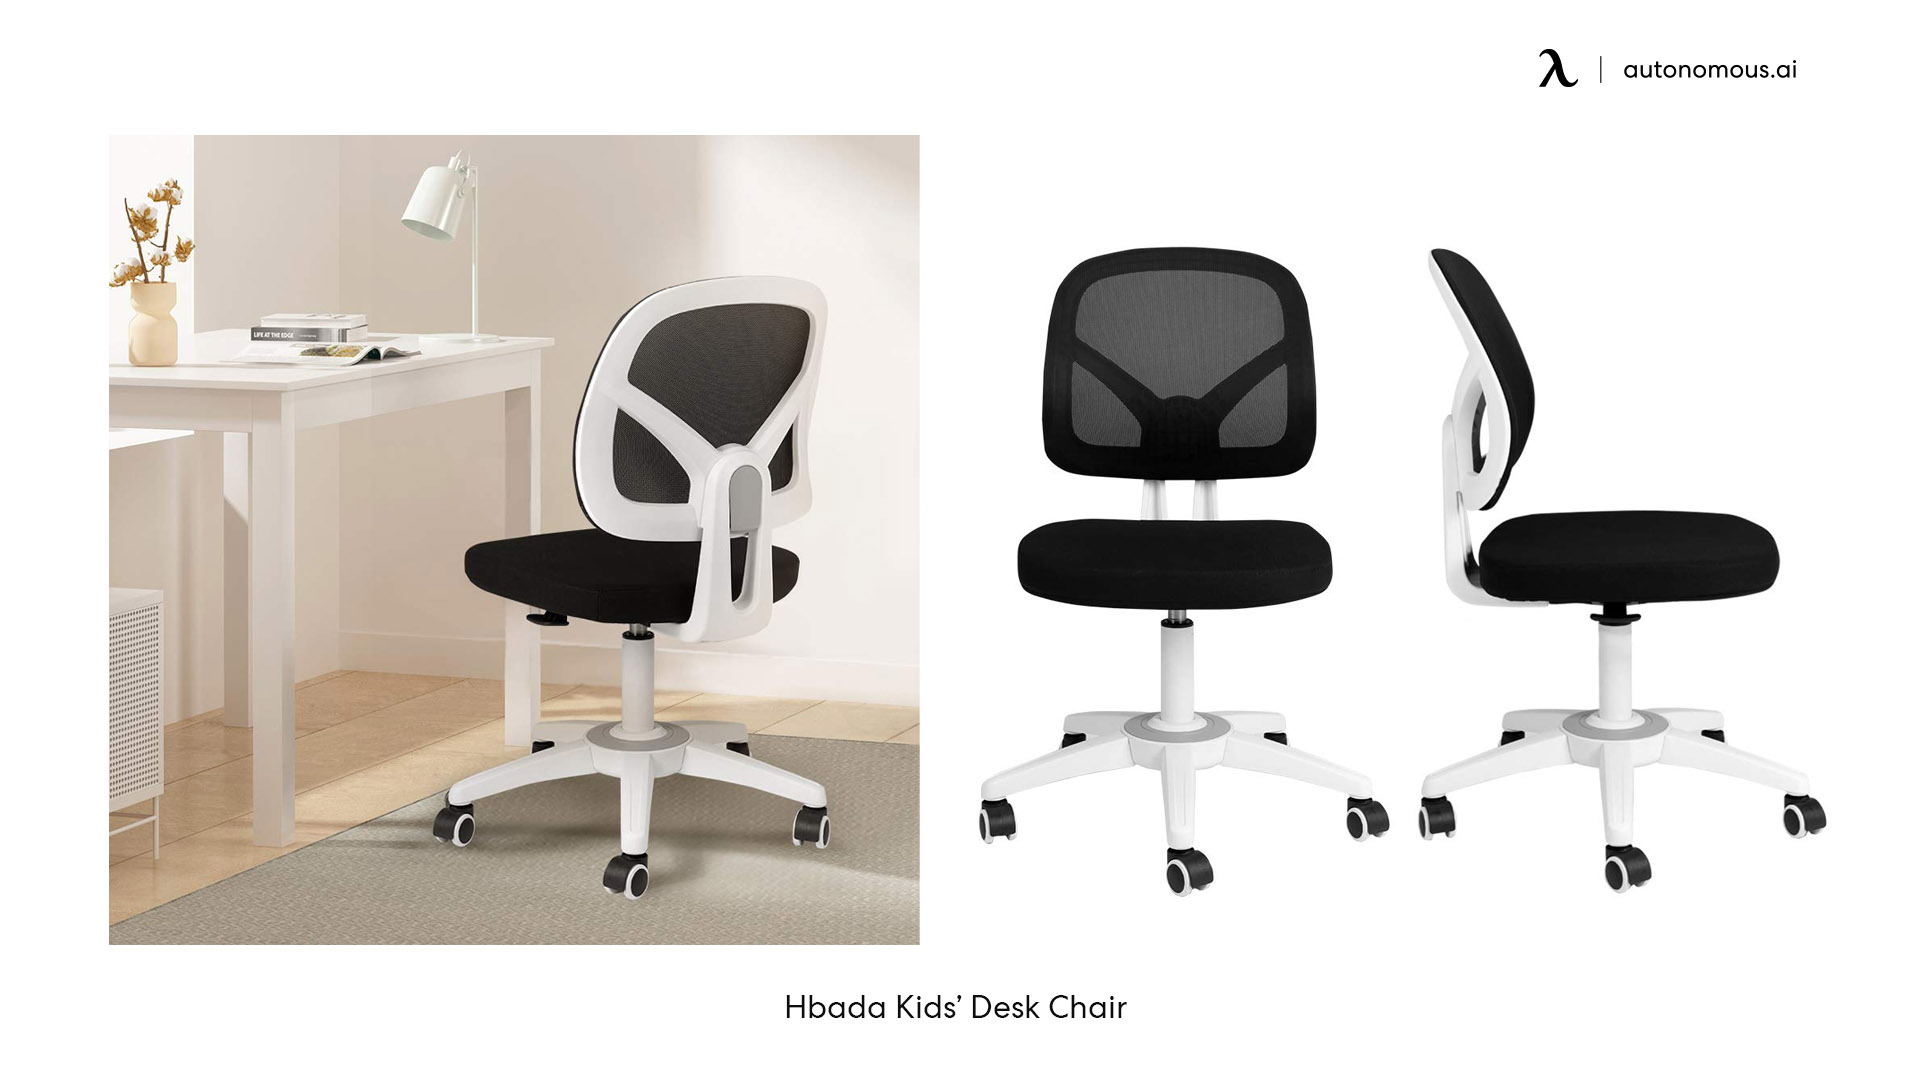 Hbada Kids’ Desk Chair